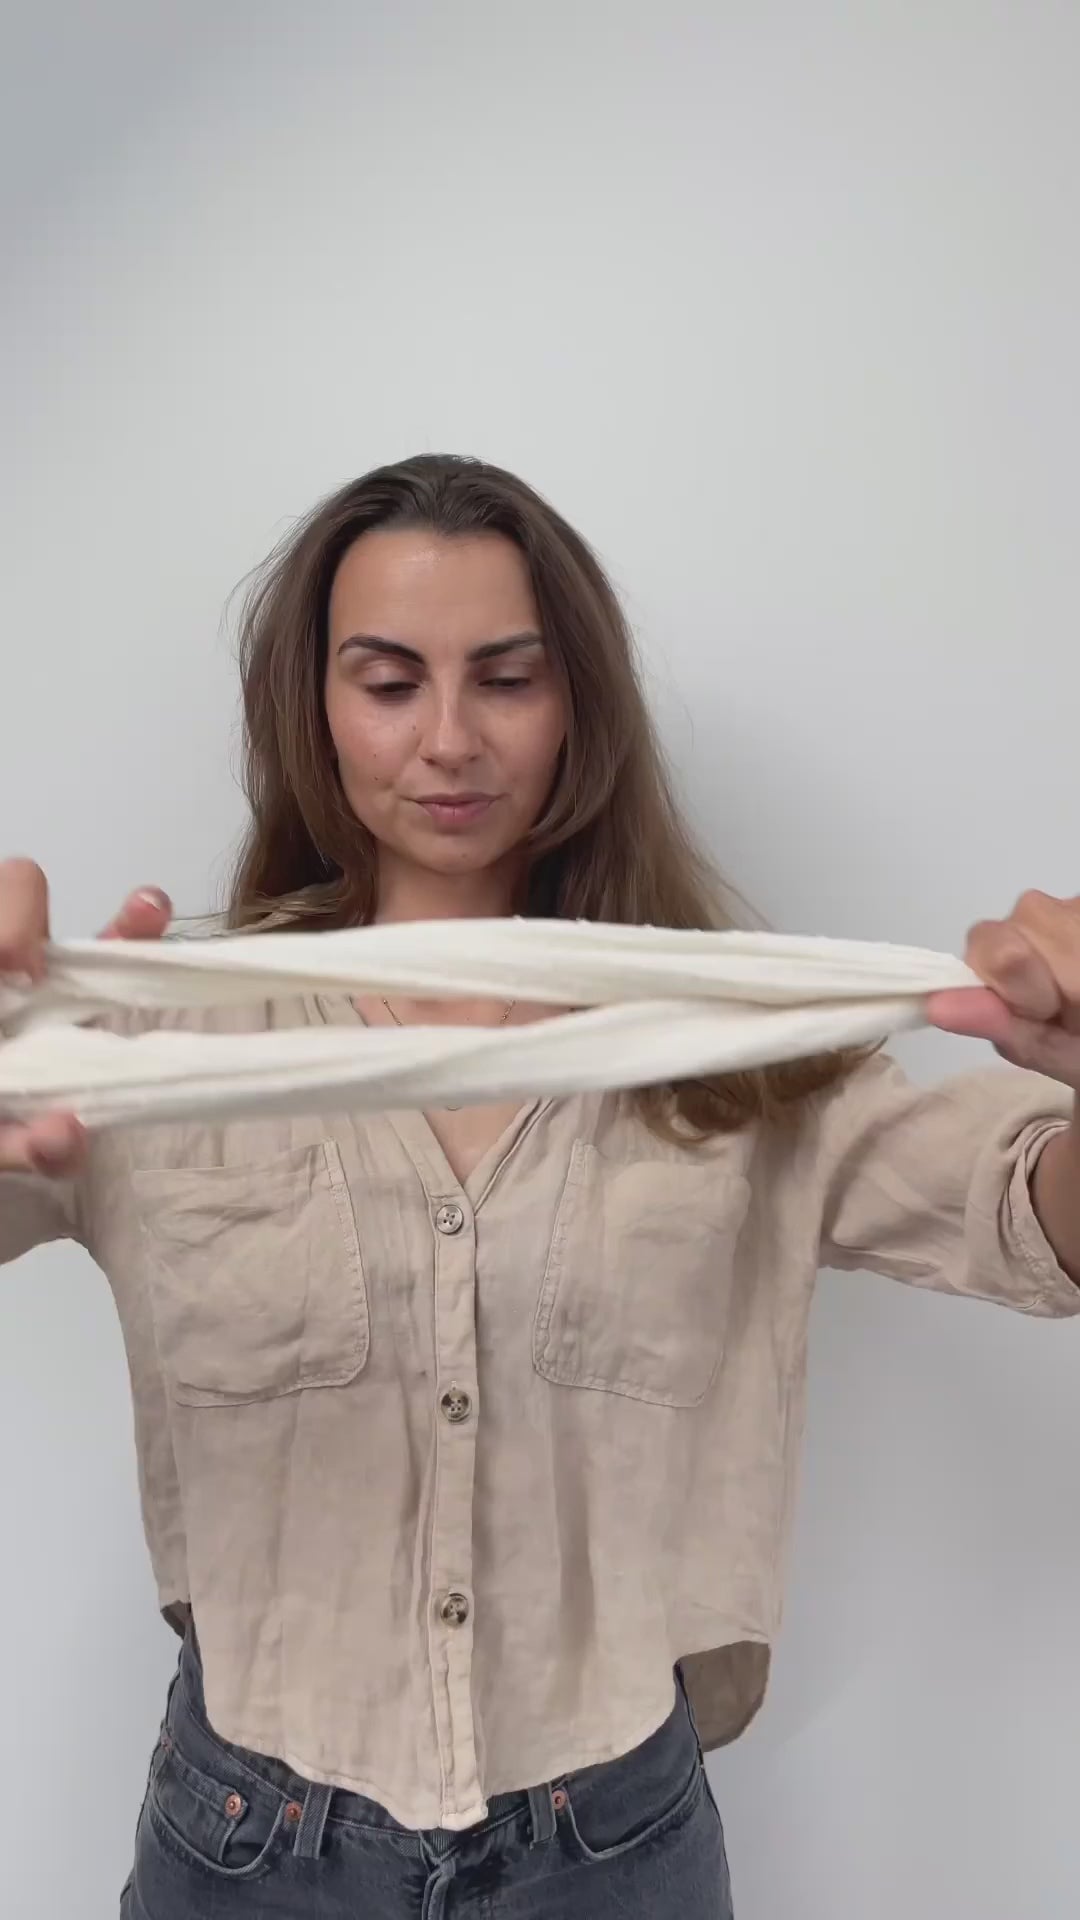 Video laden: Vor einem weißen Hintergrund bindet sich eine Frau mit einem cremefarbenen Drahthaarband eine Duttfrisur.